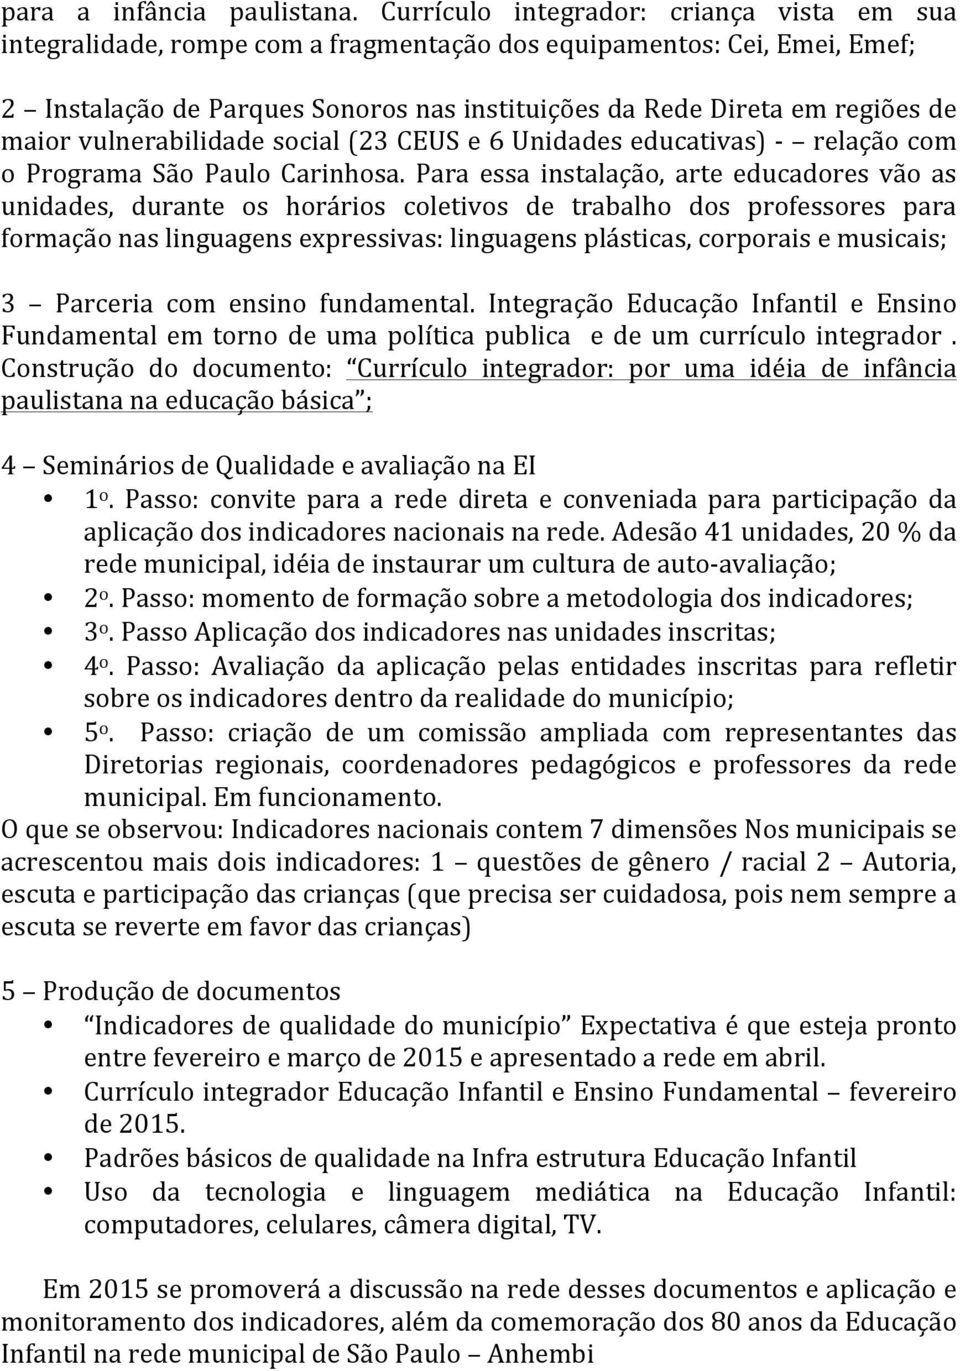 maior vulnerabilidade social (23 CEUS e 6 Unidades educativas) relação com o Programa São Paulo Carinhosa.